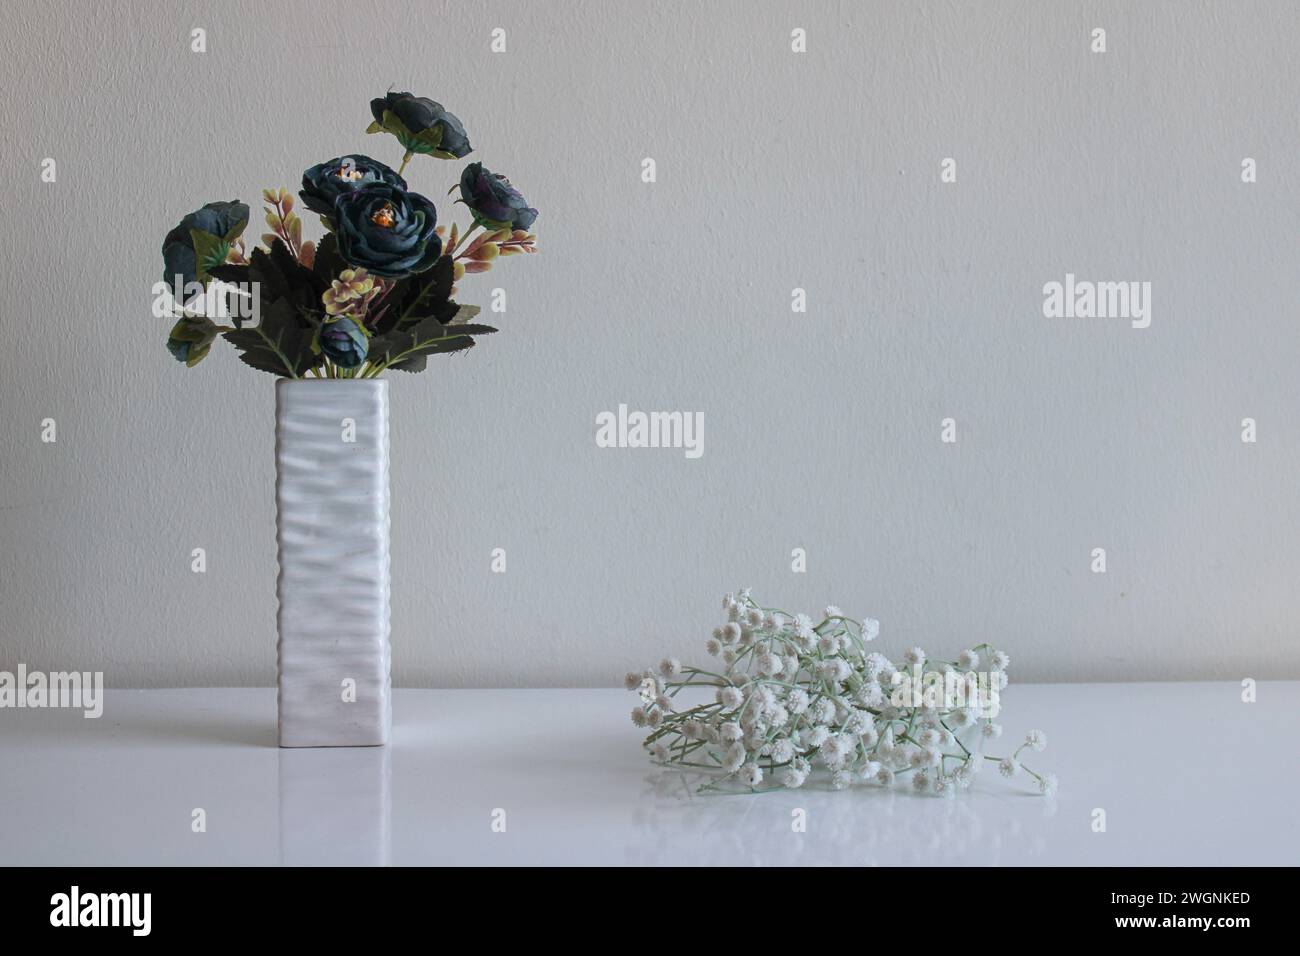 Un bouquet di fiori blu artificiali sorge in un vaso a rilievo. Piccoli fiori bianchi giacciono nelle vicinanze. Sfondo e superficie neutri Foto Stock